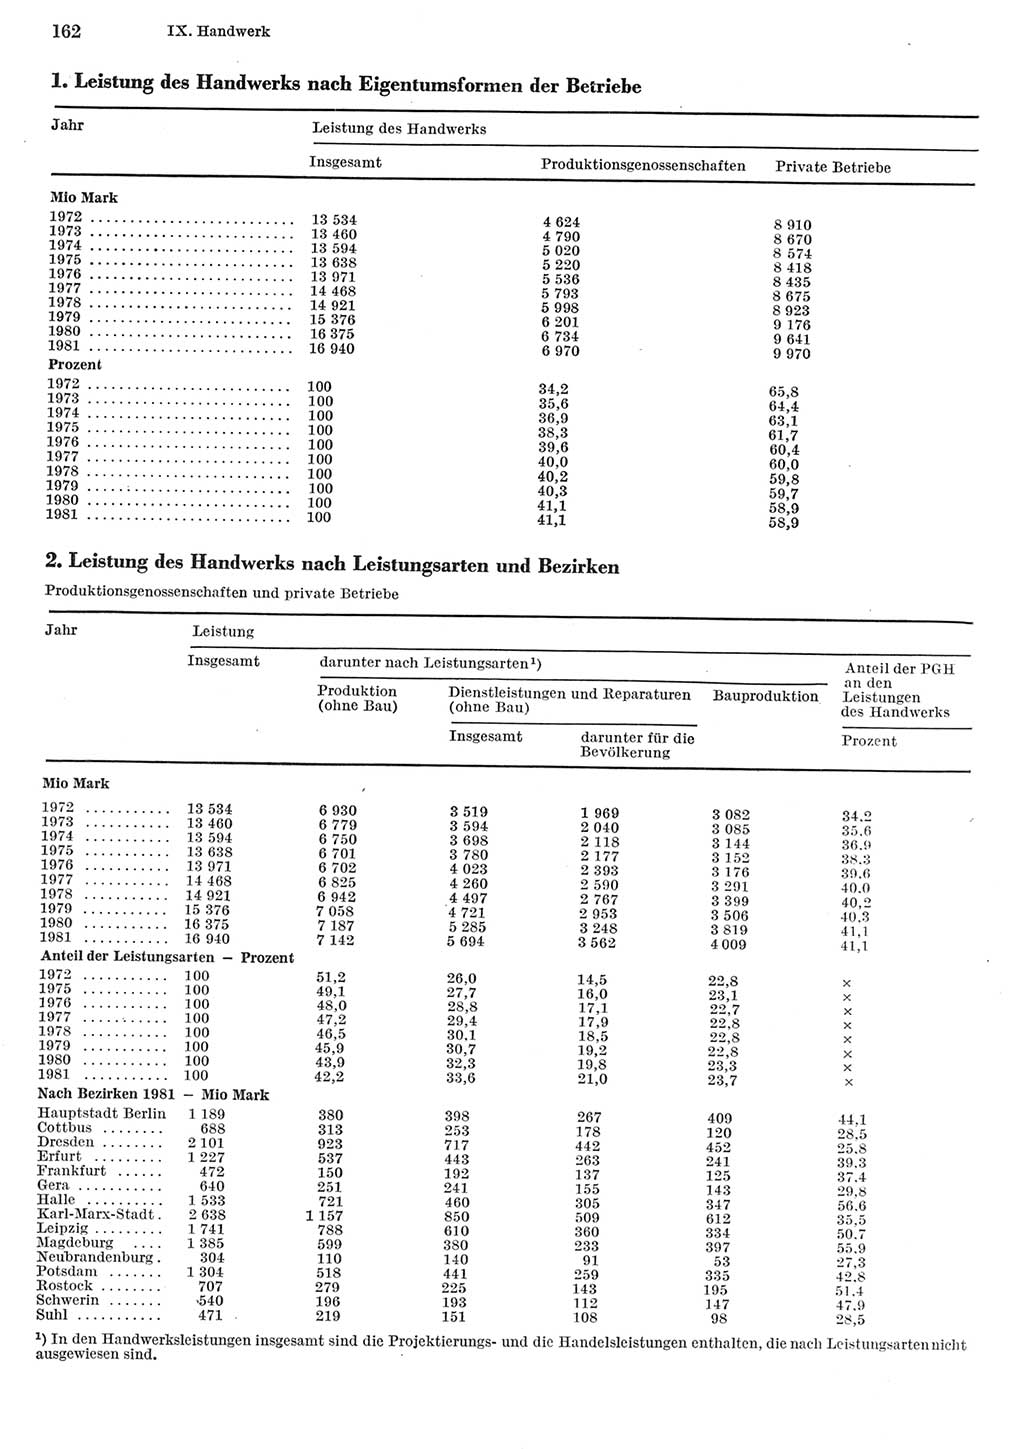 Statistisches Jahrbuch der Deutschen Demokratischen Republik (DDR) 1982, Seite 162 (Stat. Jb. DDR 1982, S. 162)